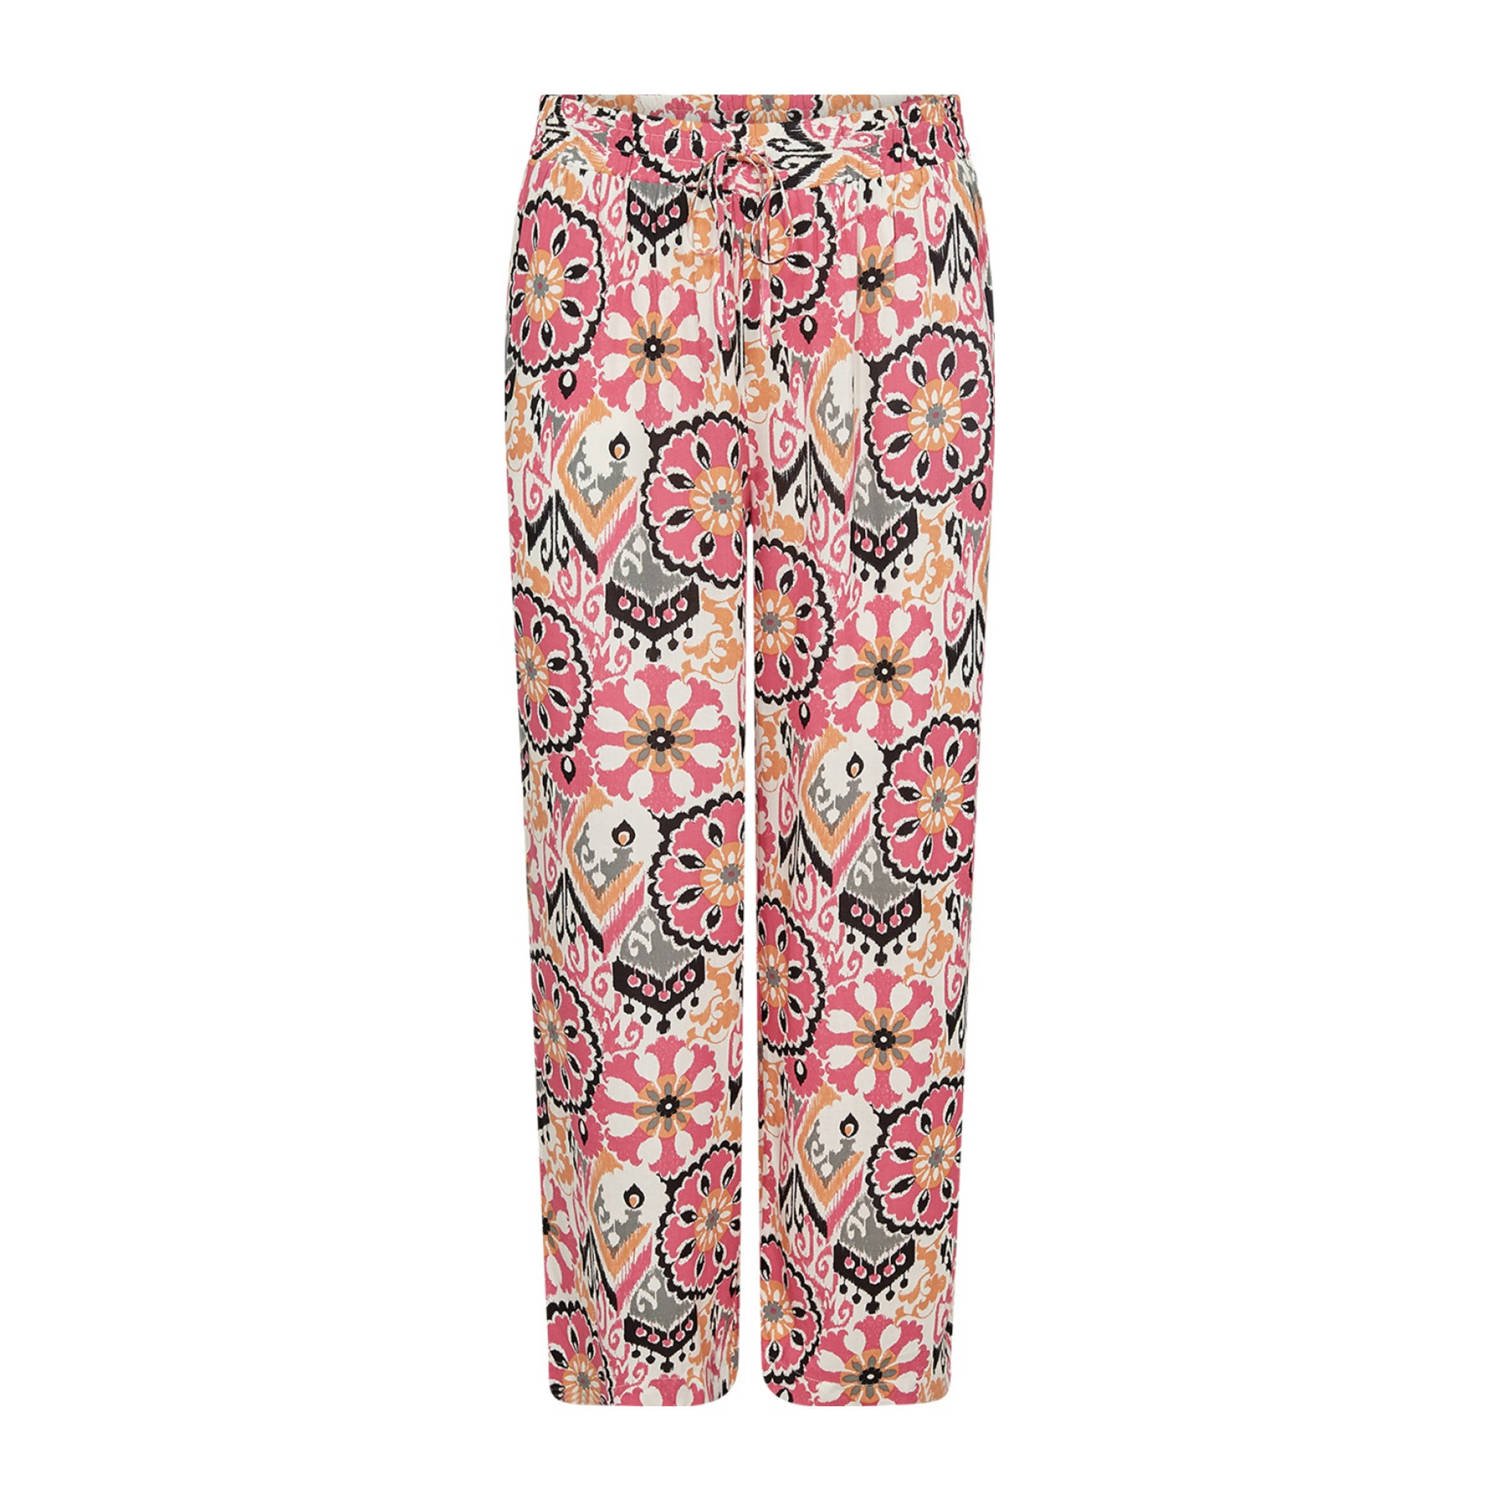 Wasabiconcept high waist wide leg pantalon met all over print roze ecru geel